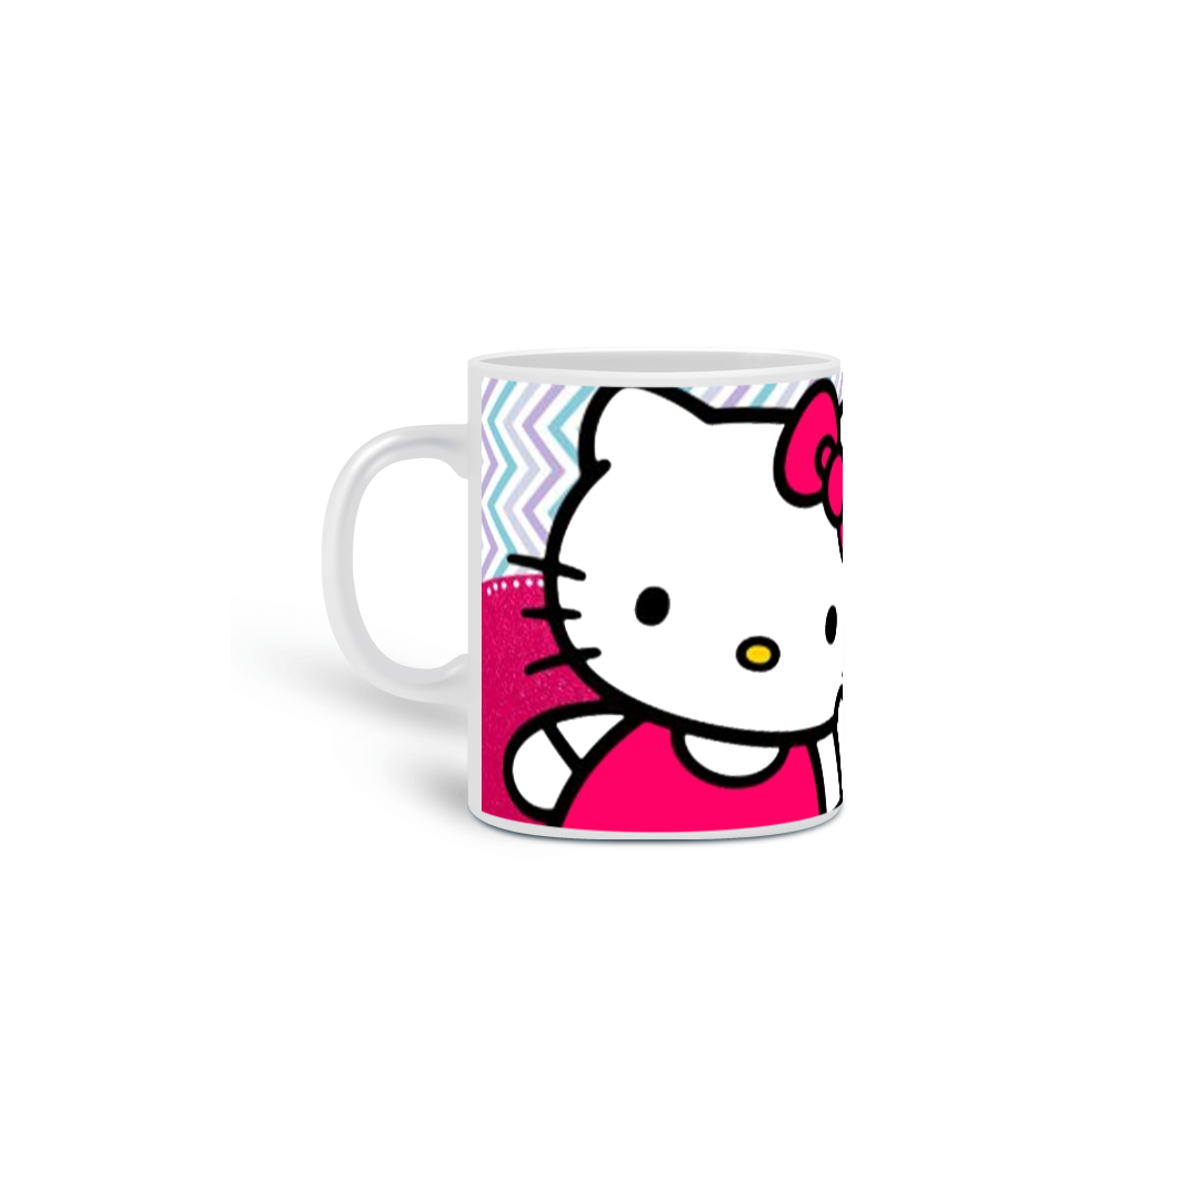 Nome do produto: Caneca - Hello Kitty